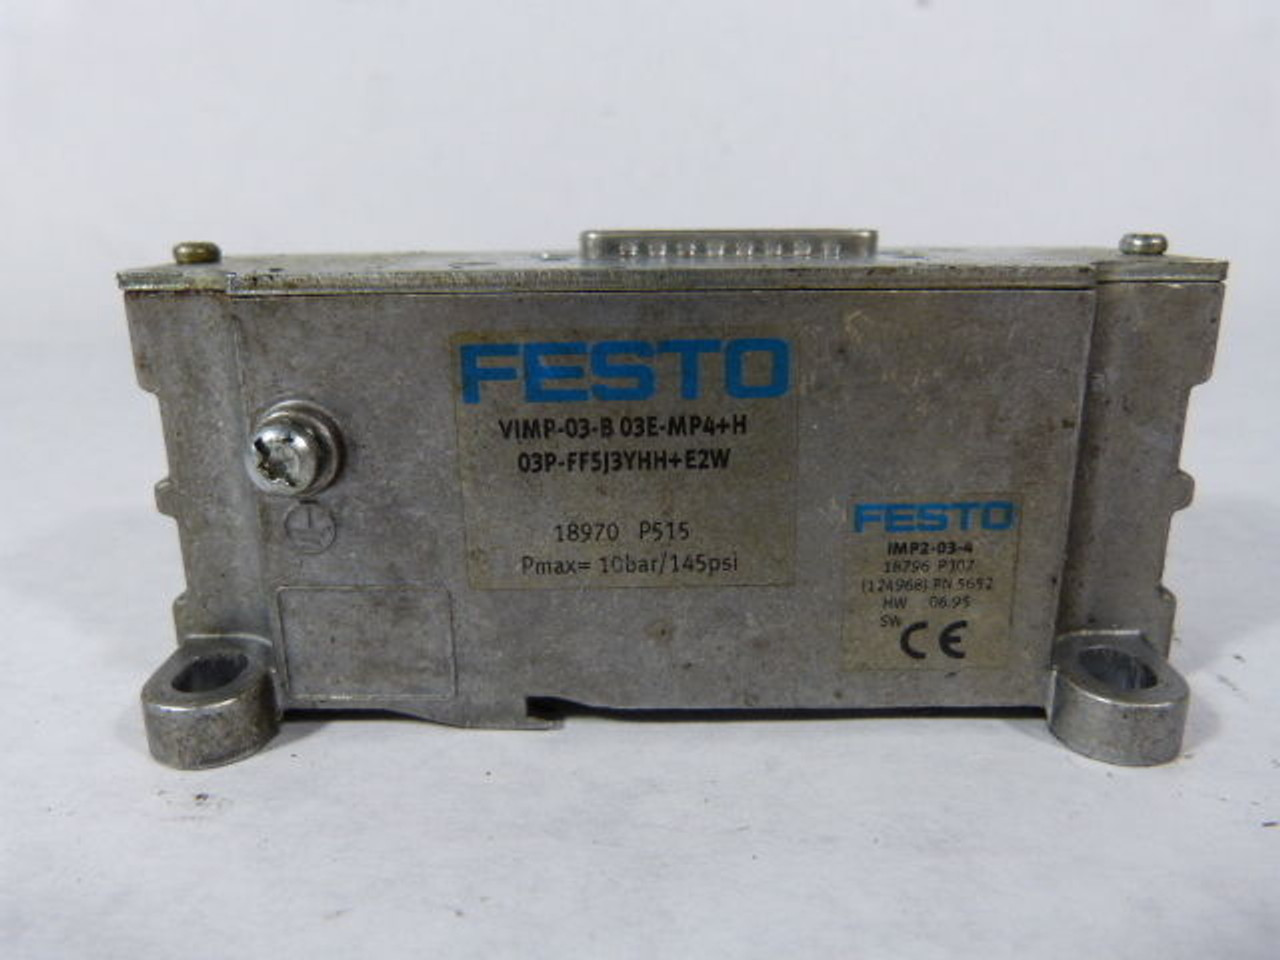 Festo VIMP-03-B03E-MP4??FF5J3YHH?? Control Module 145psi USED